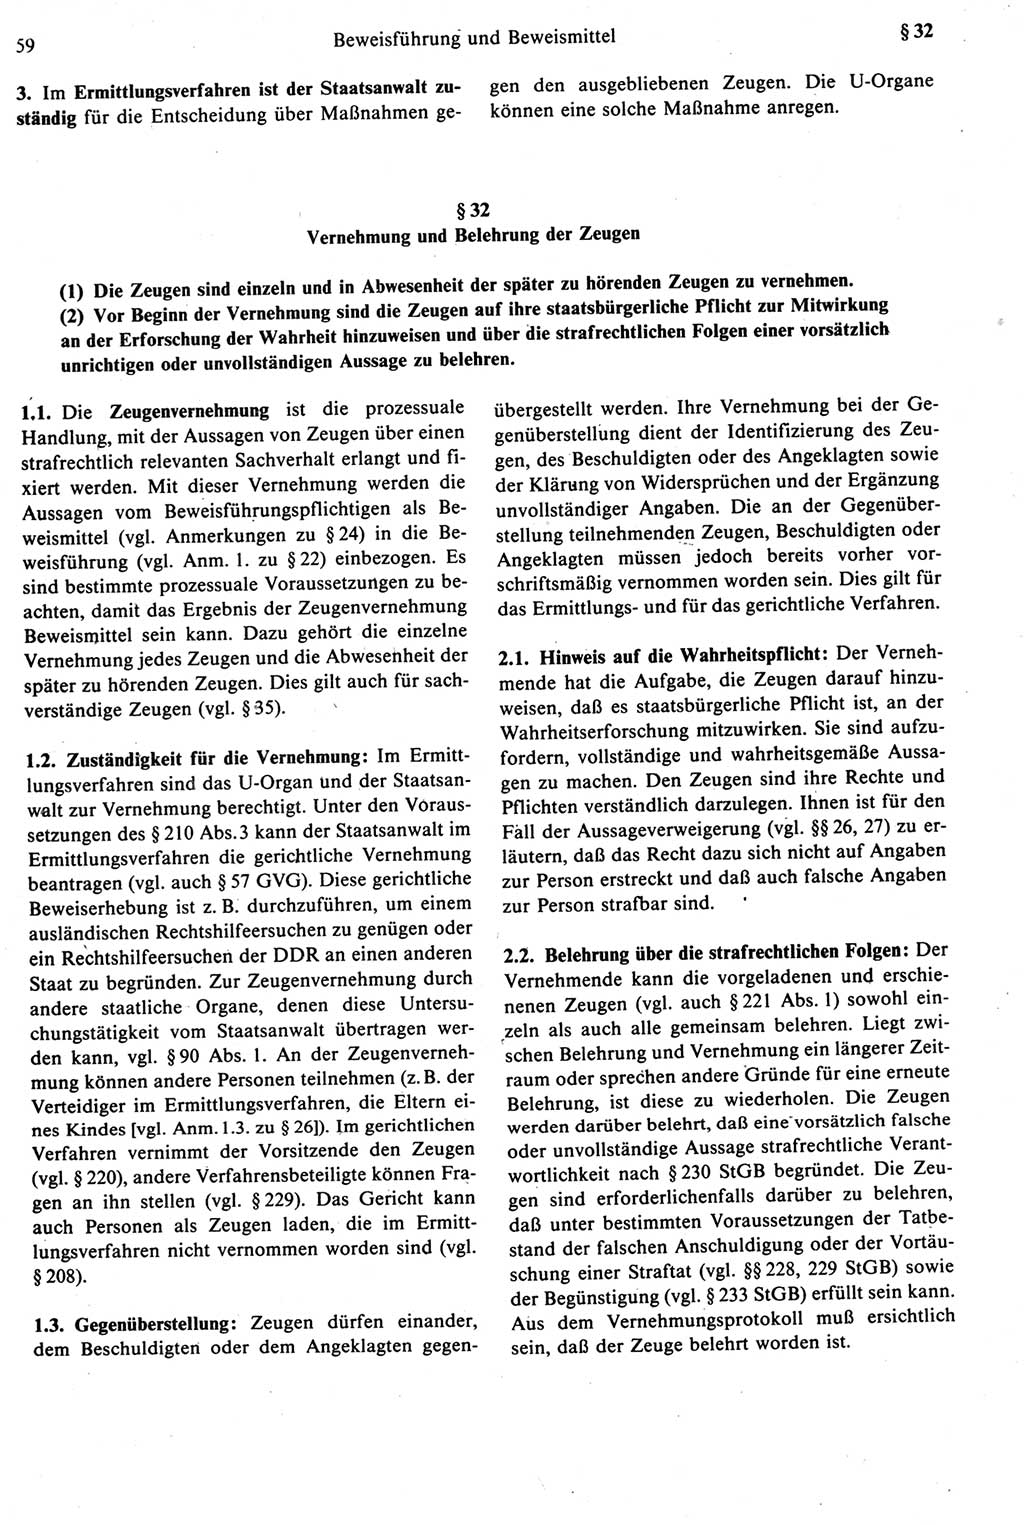 Strafprozeßrecht der DDR [Deutsche Demokratische Republik], Kommentar zur Strafprozeßordnung (StPO) 1987, Seite 59 (Strafprozeßr. DDR Komm. StPO 1987, S. 59)